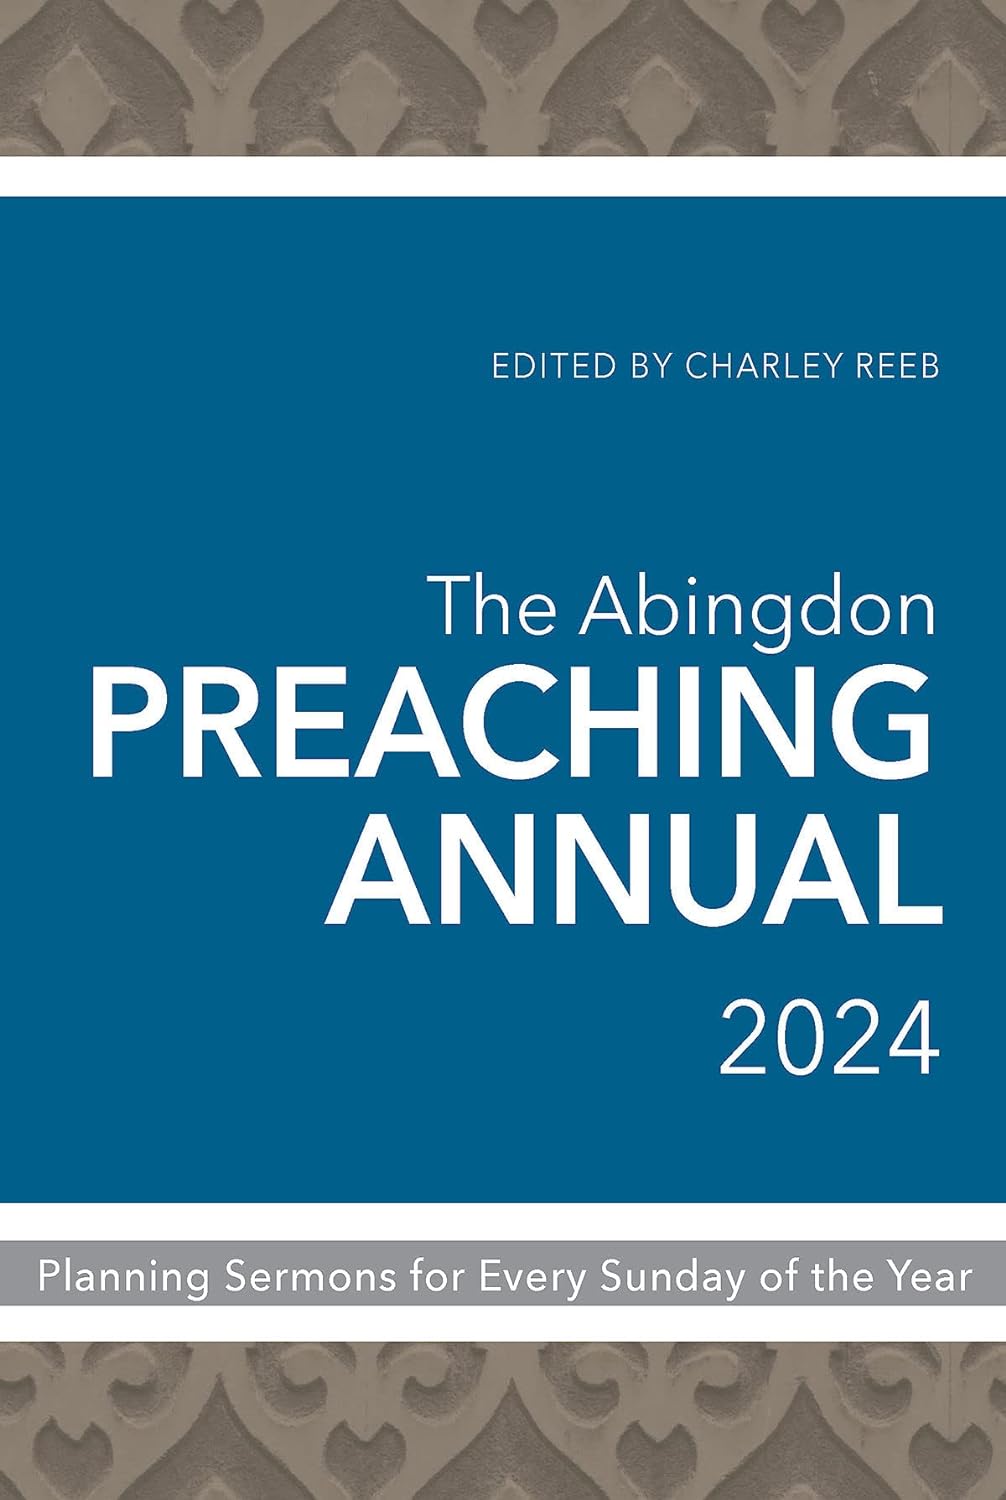 Abingdon Preaching Annual 2024